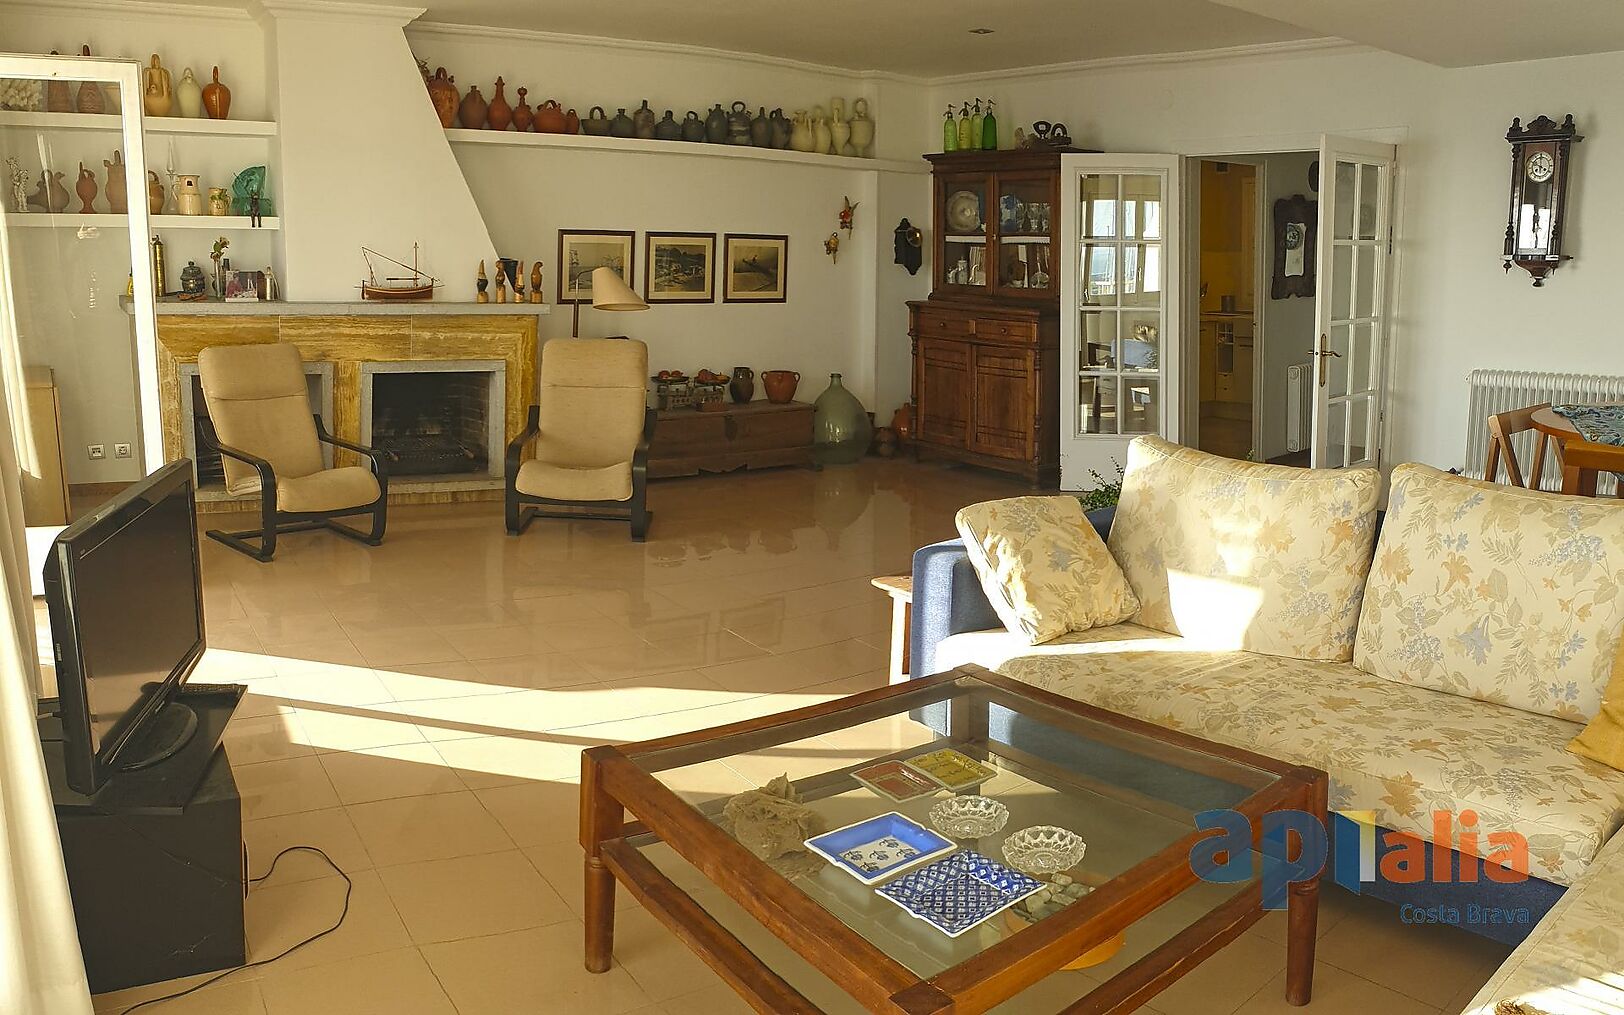 Precioso piso de 3 dormitorios con vistas al mar en Palamós.